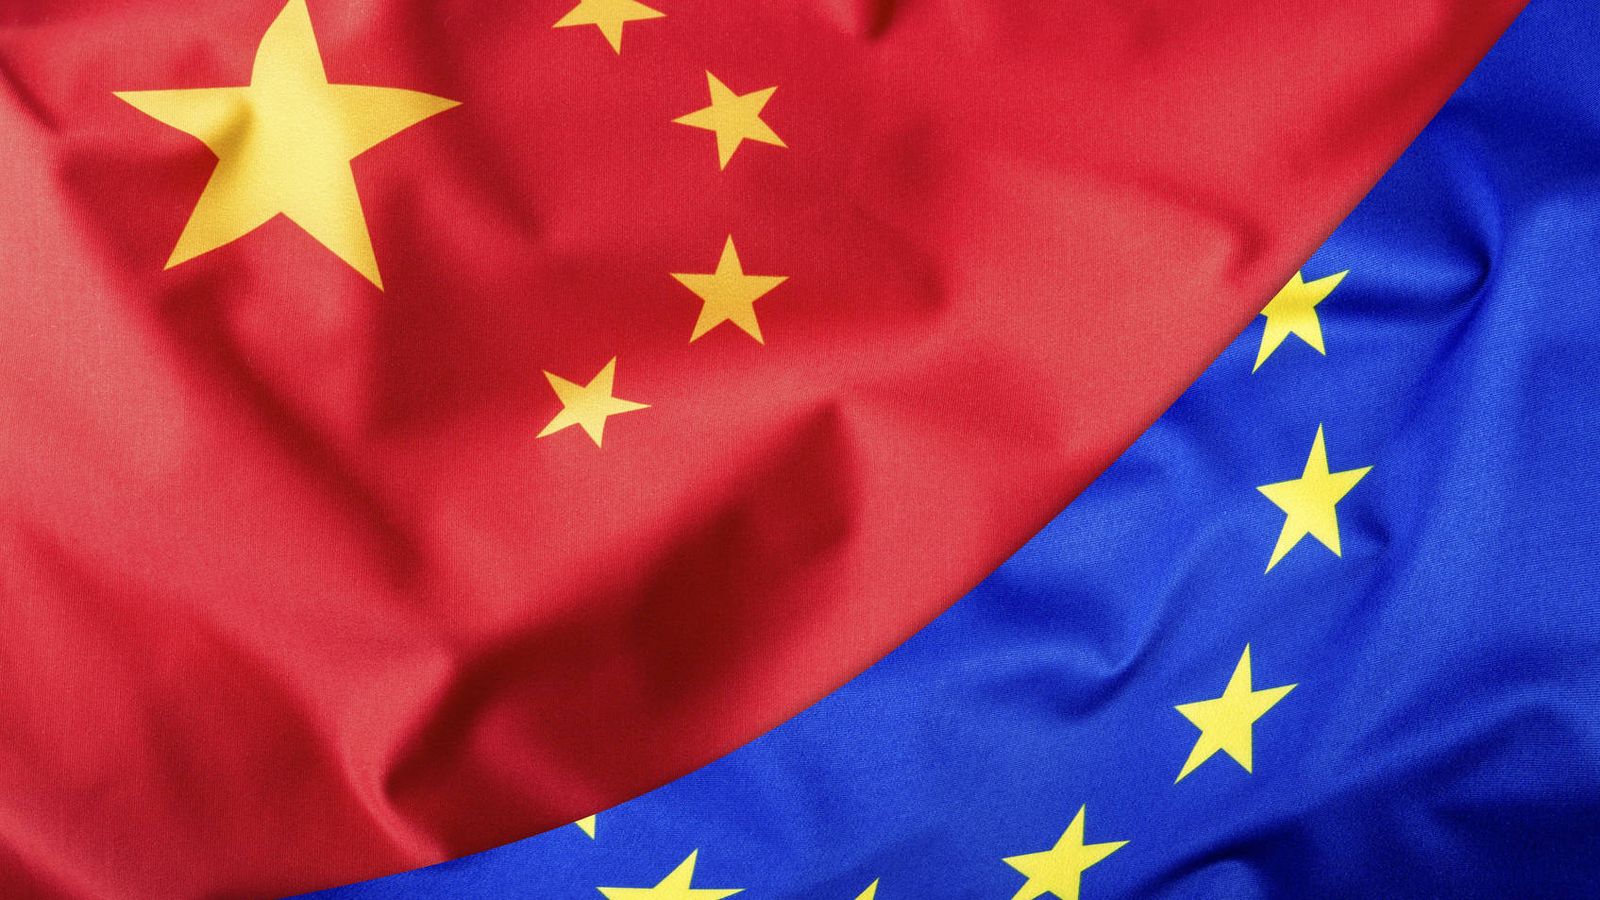 Foto: Bandera China y Unión Europea (iStock)